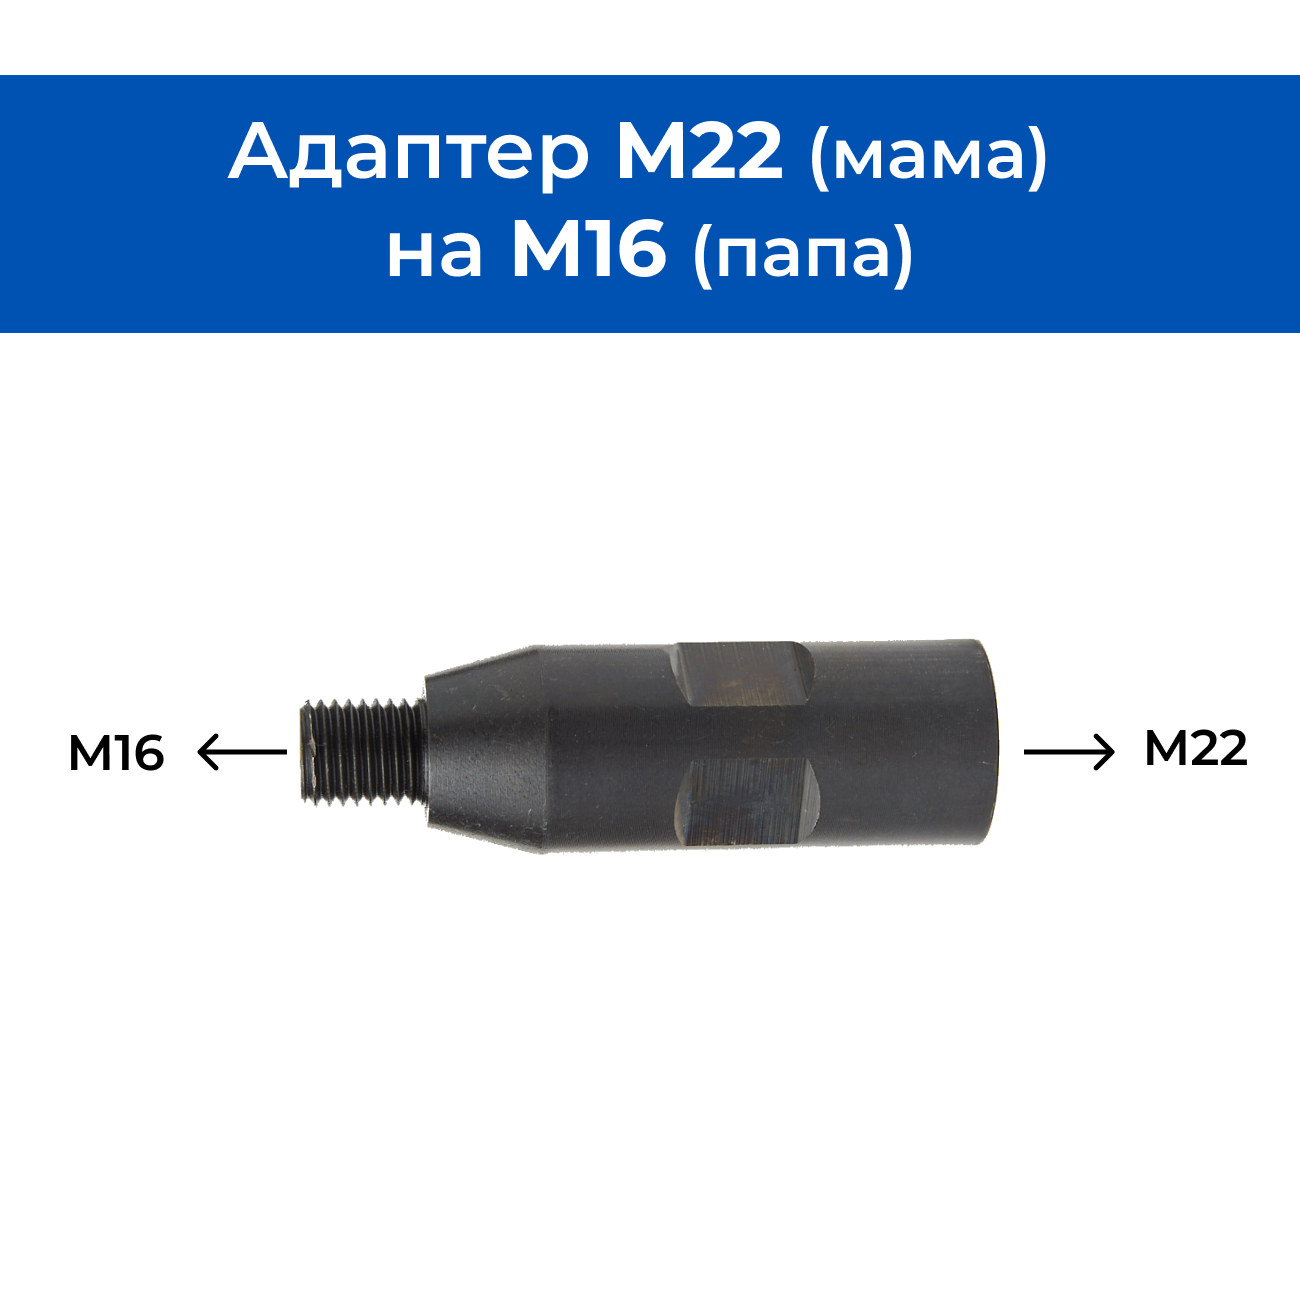 Адаптер M22 (мама) - M16 (папа) со сквозным отверстием 5 мм для алмазных коронок / Переходник для дрели